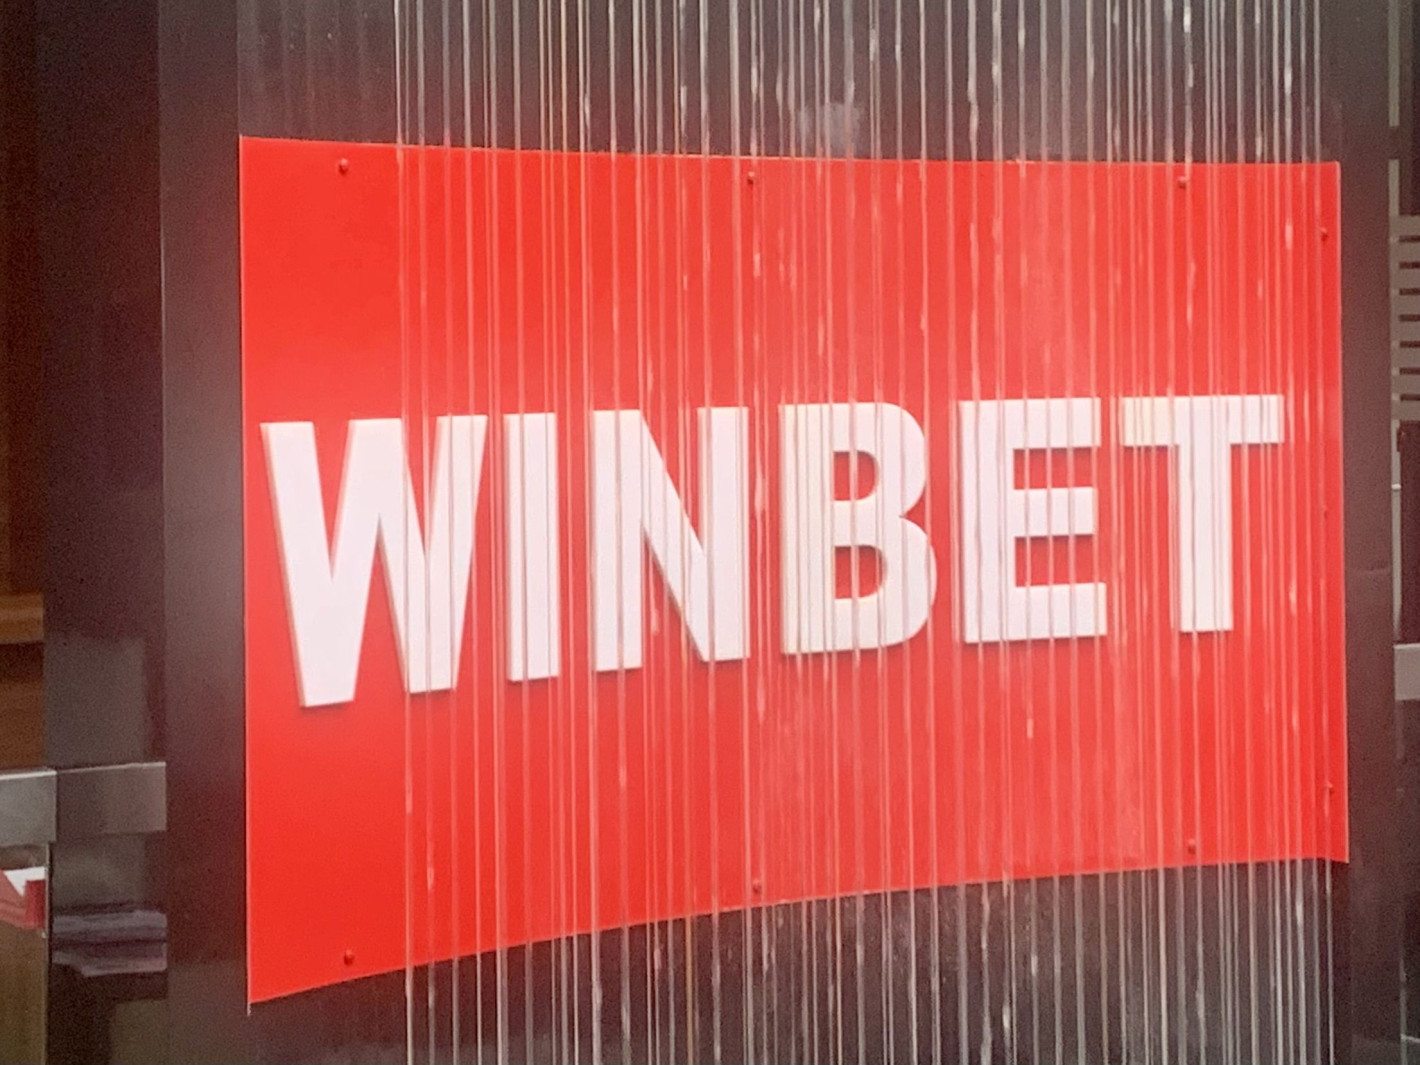 WINBET не рекламира в детски издания